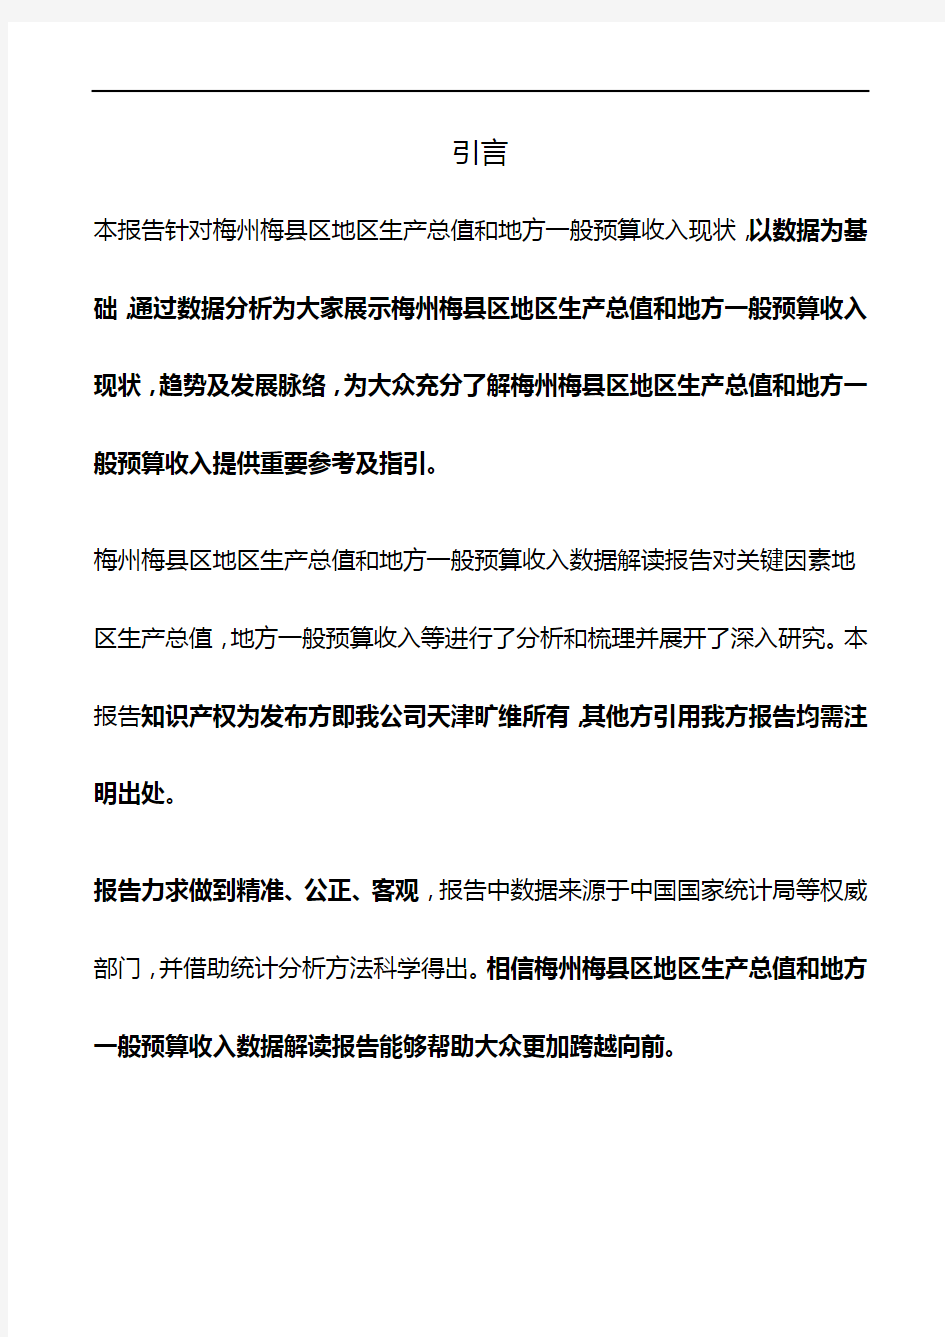 广东省梅州梅县区地区生产总值和地方一般预算收入3年数据解读报告2020版